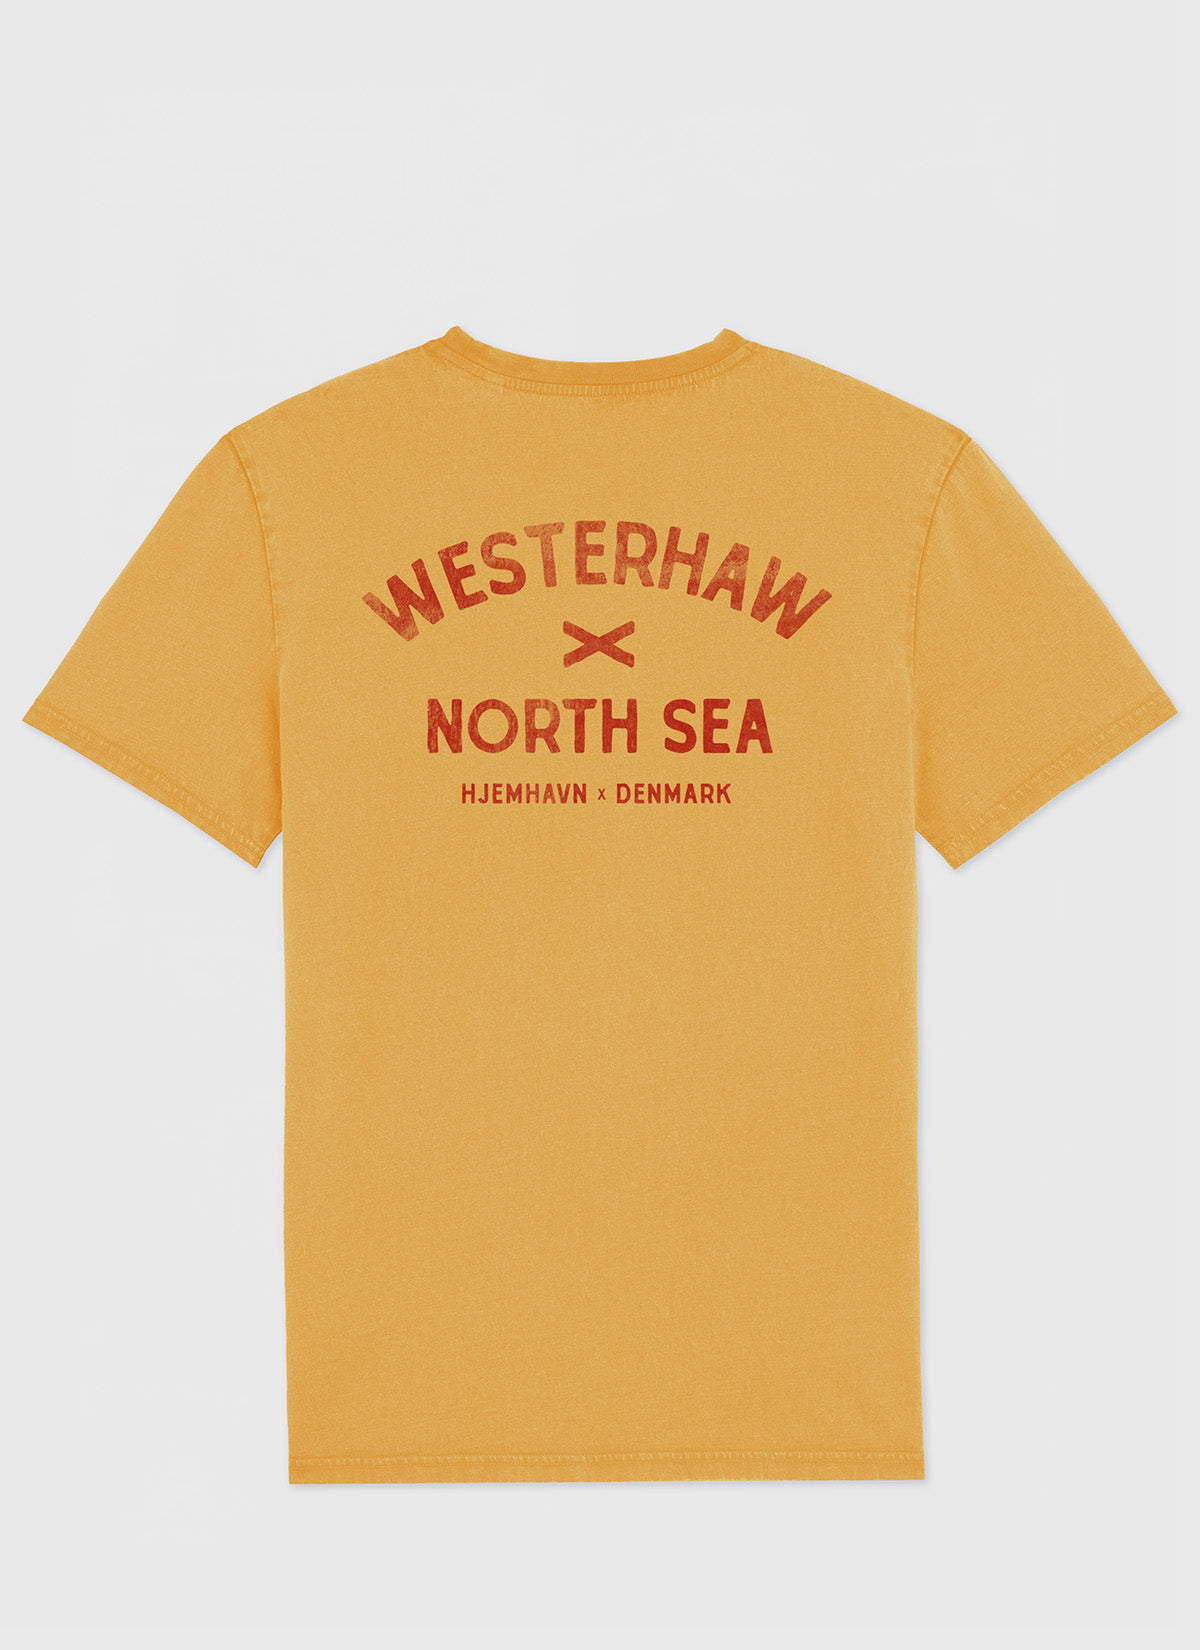 Tee "Westerhaw - North Sea"